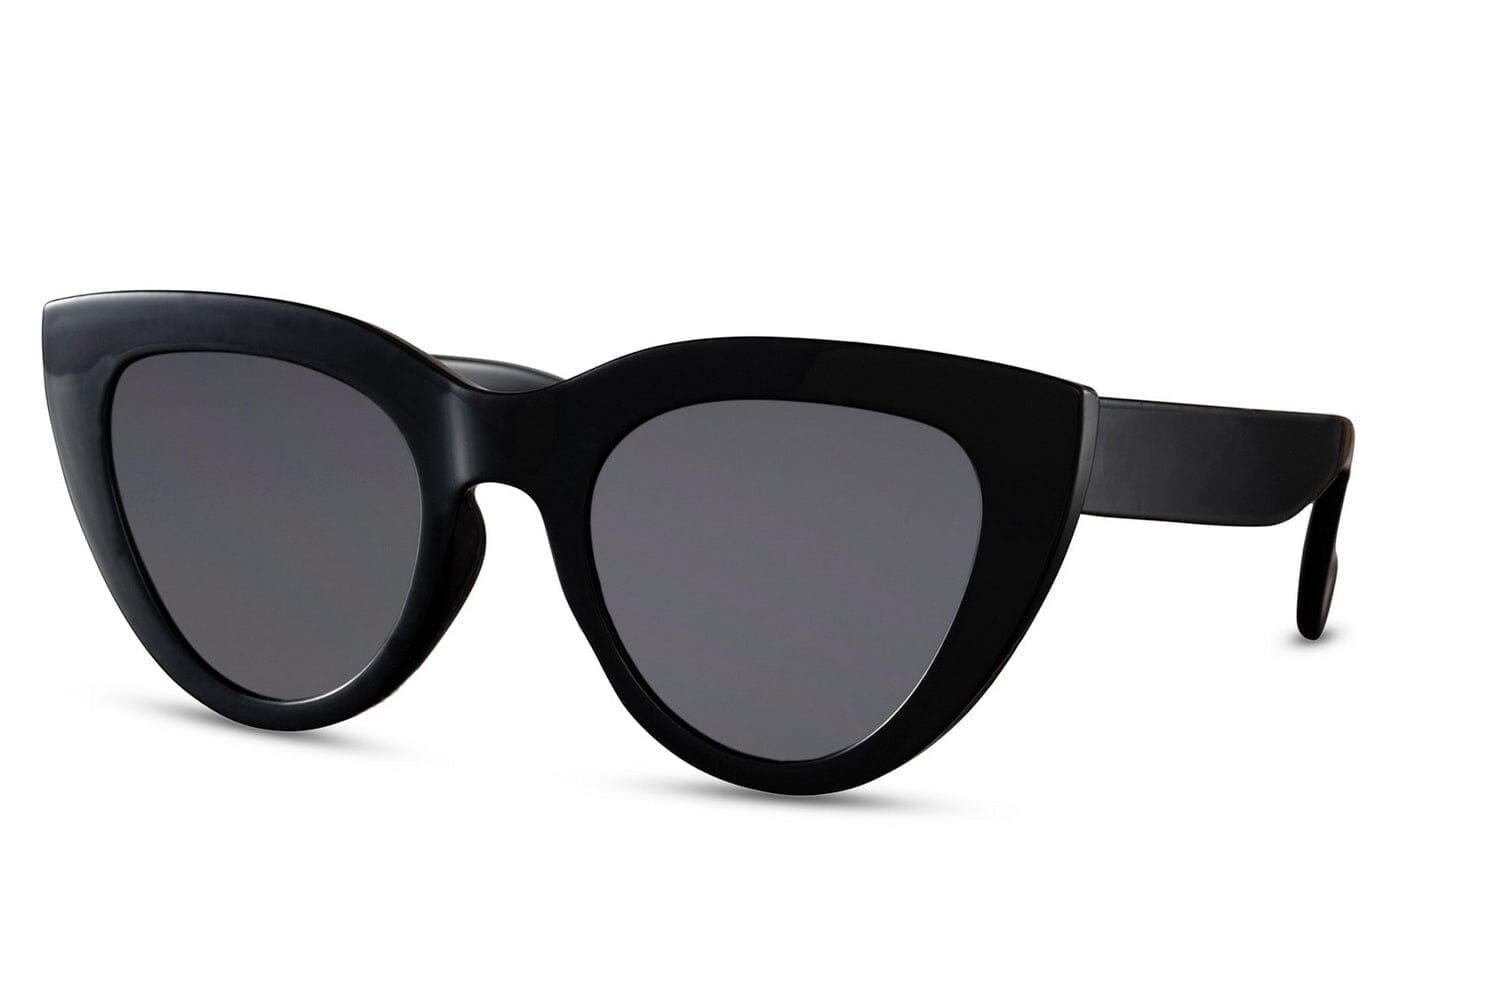 Black cat eye frames. UV400 protected. Black lenses.